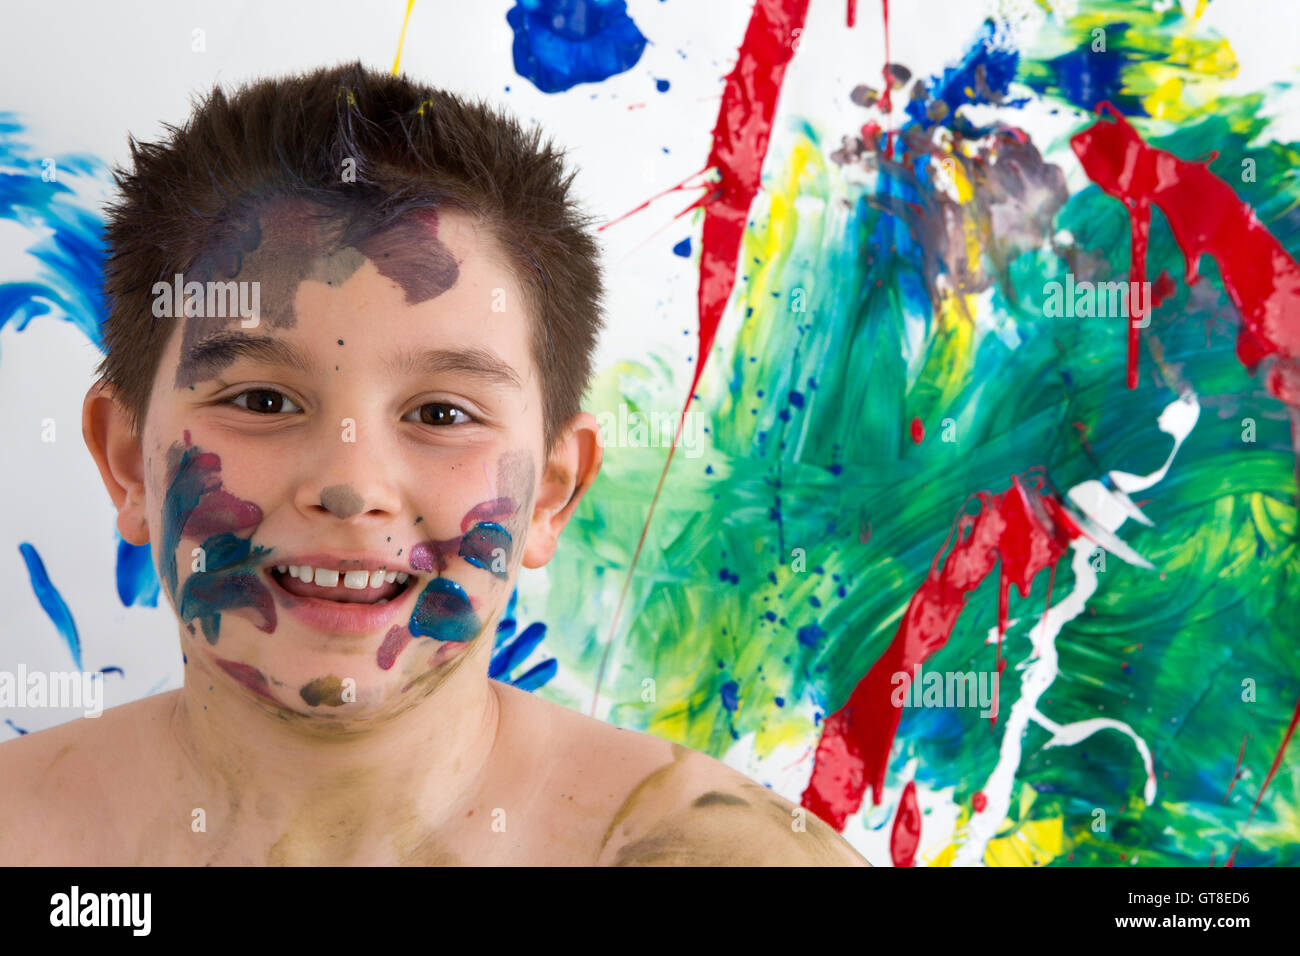 Glücklich kreativen kleinen Jungen mit Farbe Steinpyramiden auf seinem Gesicht stand vor seiner leuchtend bunte moderne abstrakte Malerei Grinsen Stockfoto